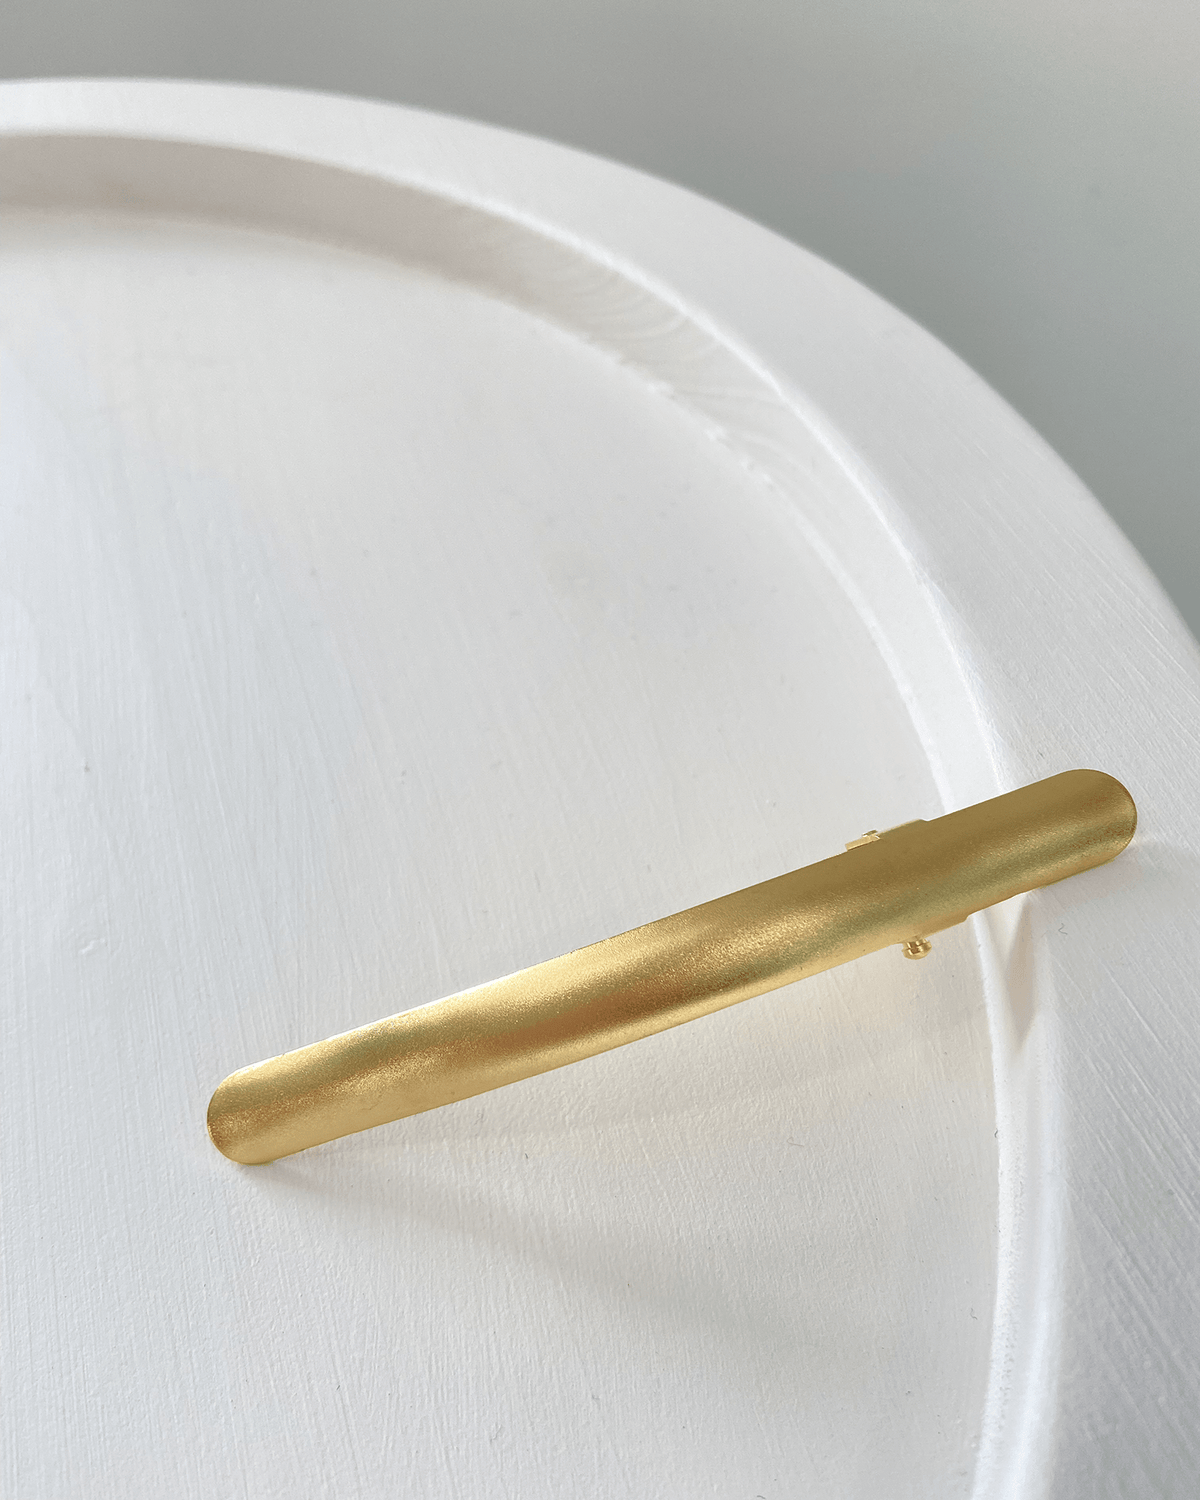 Ficcare Accessories Gold Matte / S Ficcarissimo Small in Gold Matte